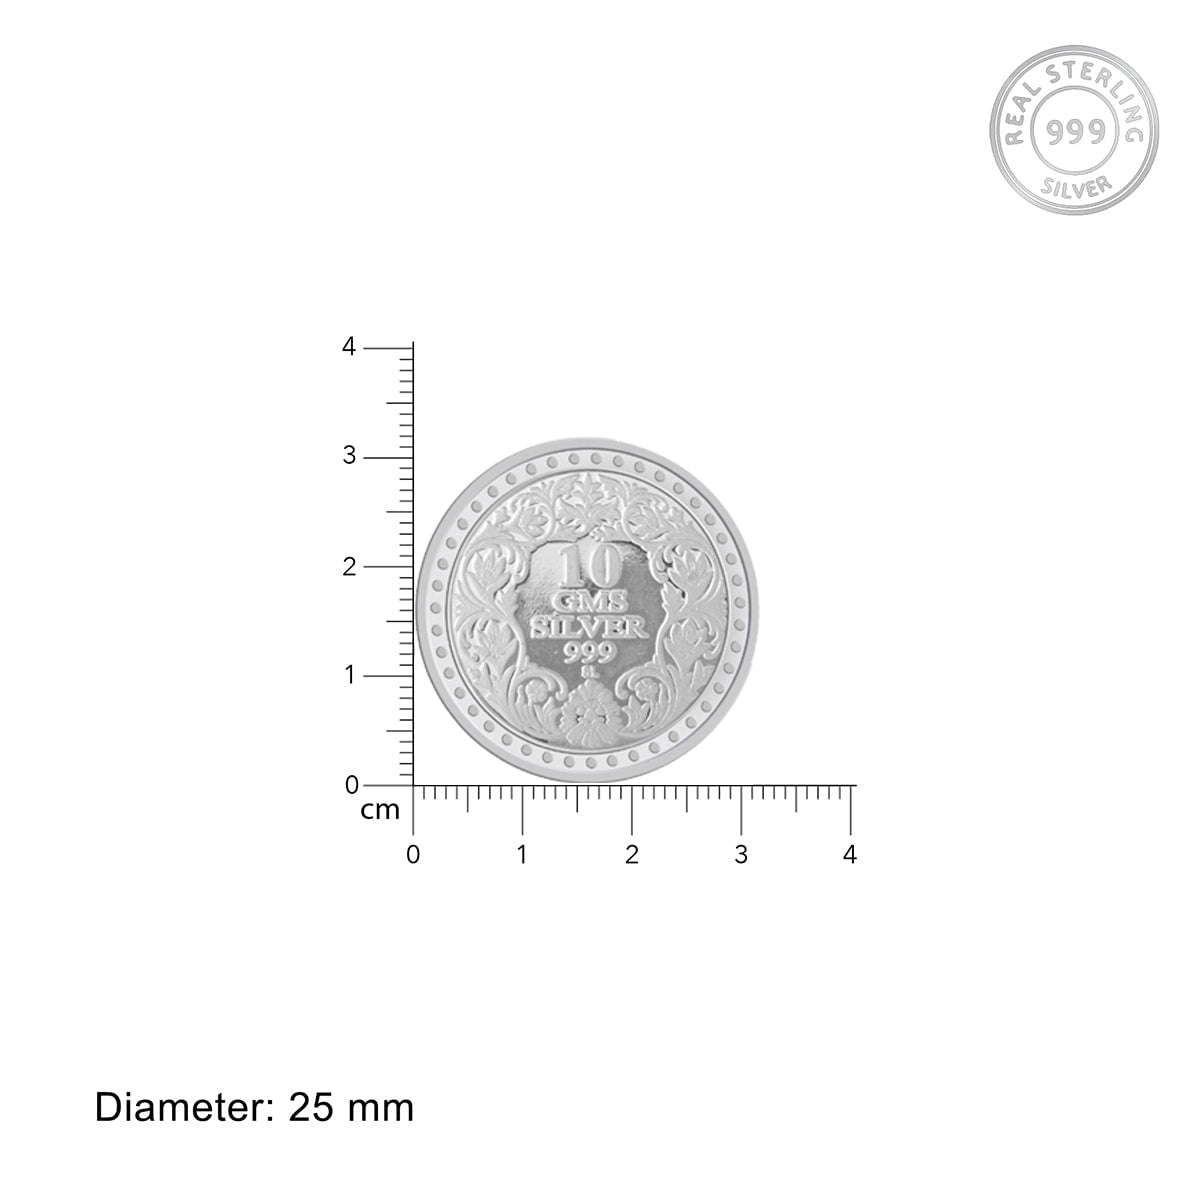 New Born 10gm Silver Coin